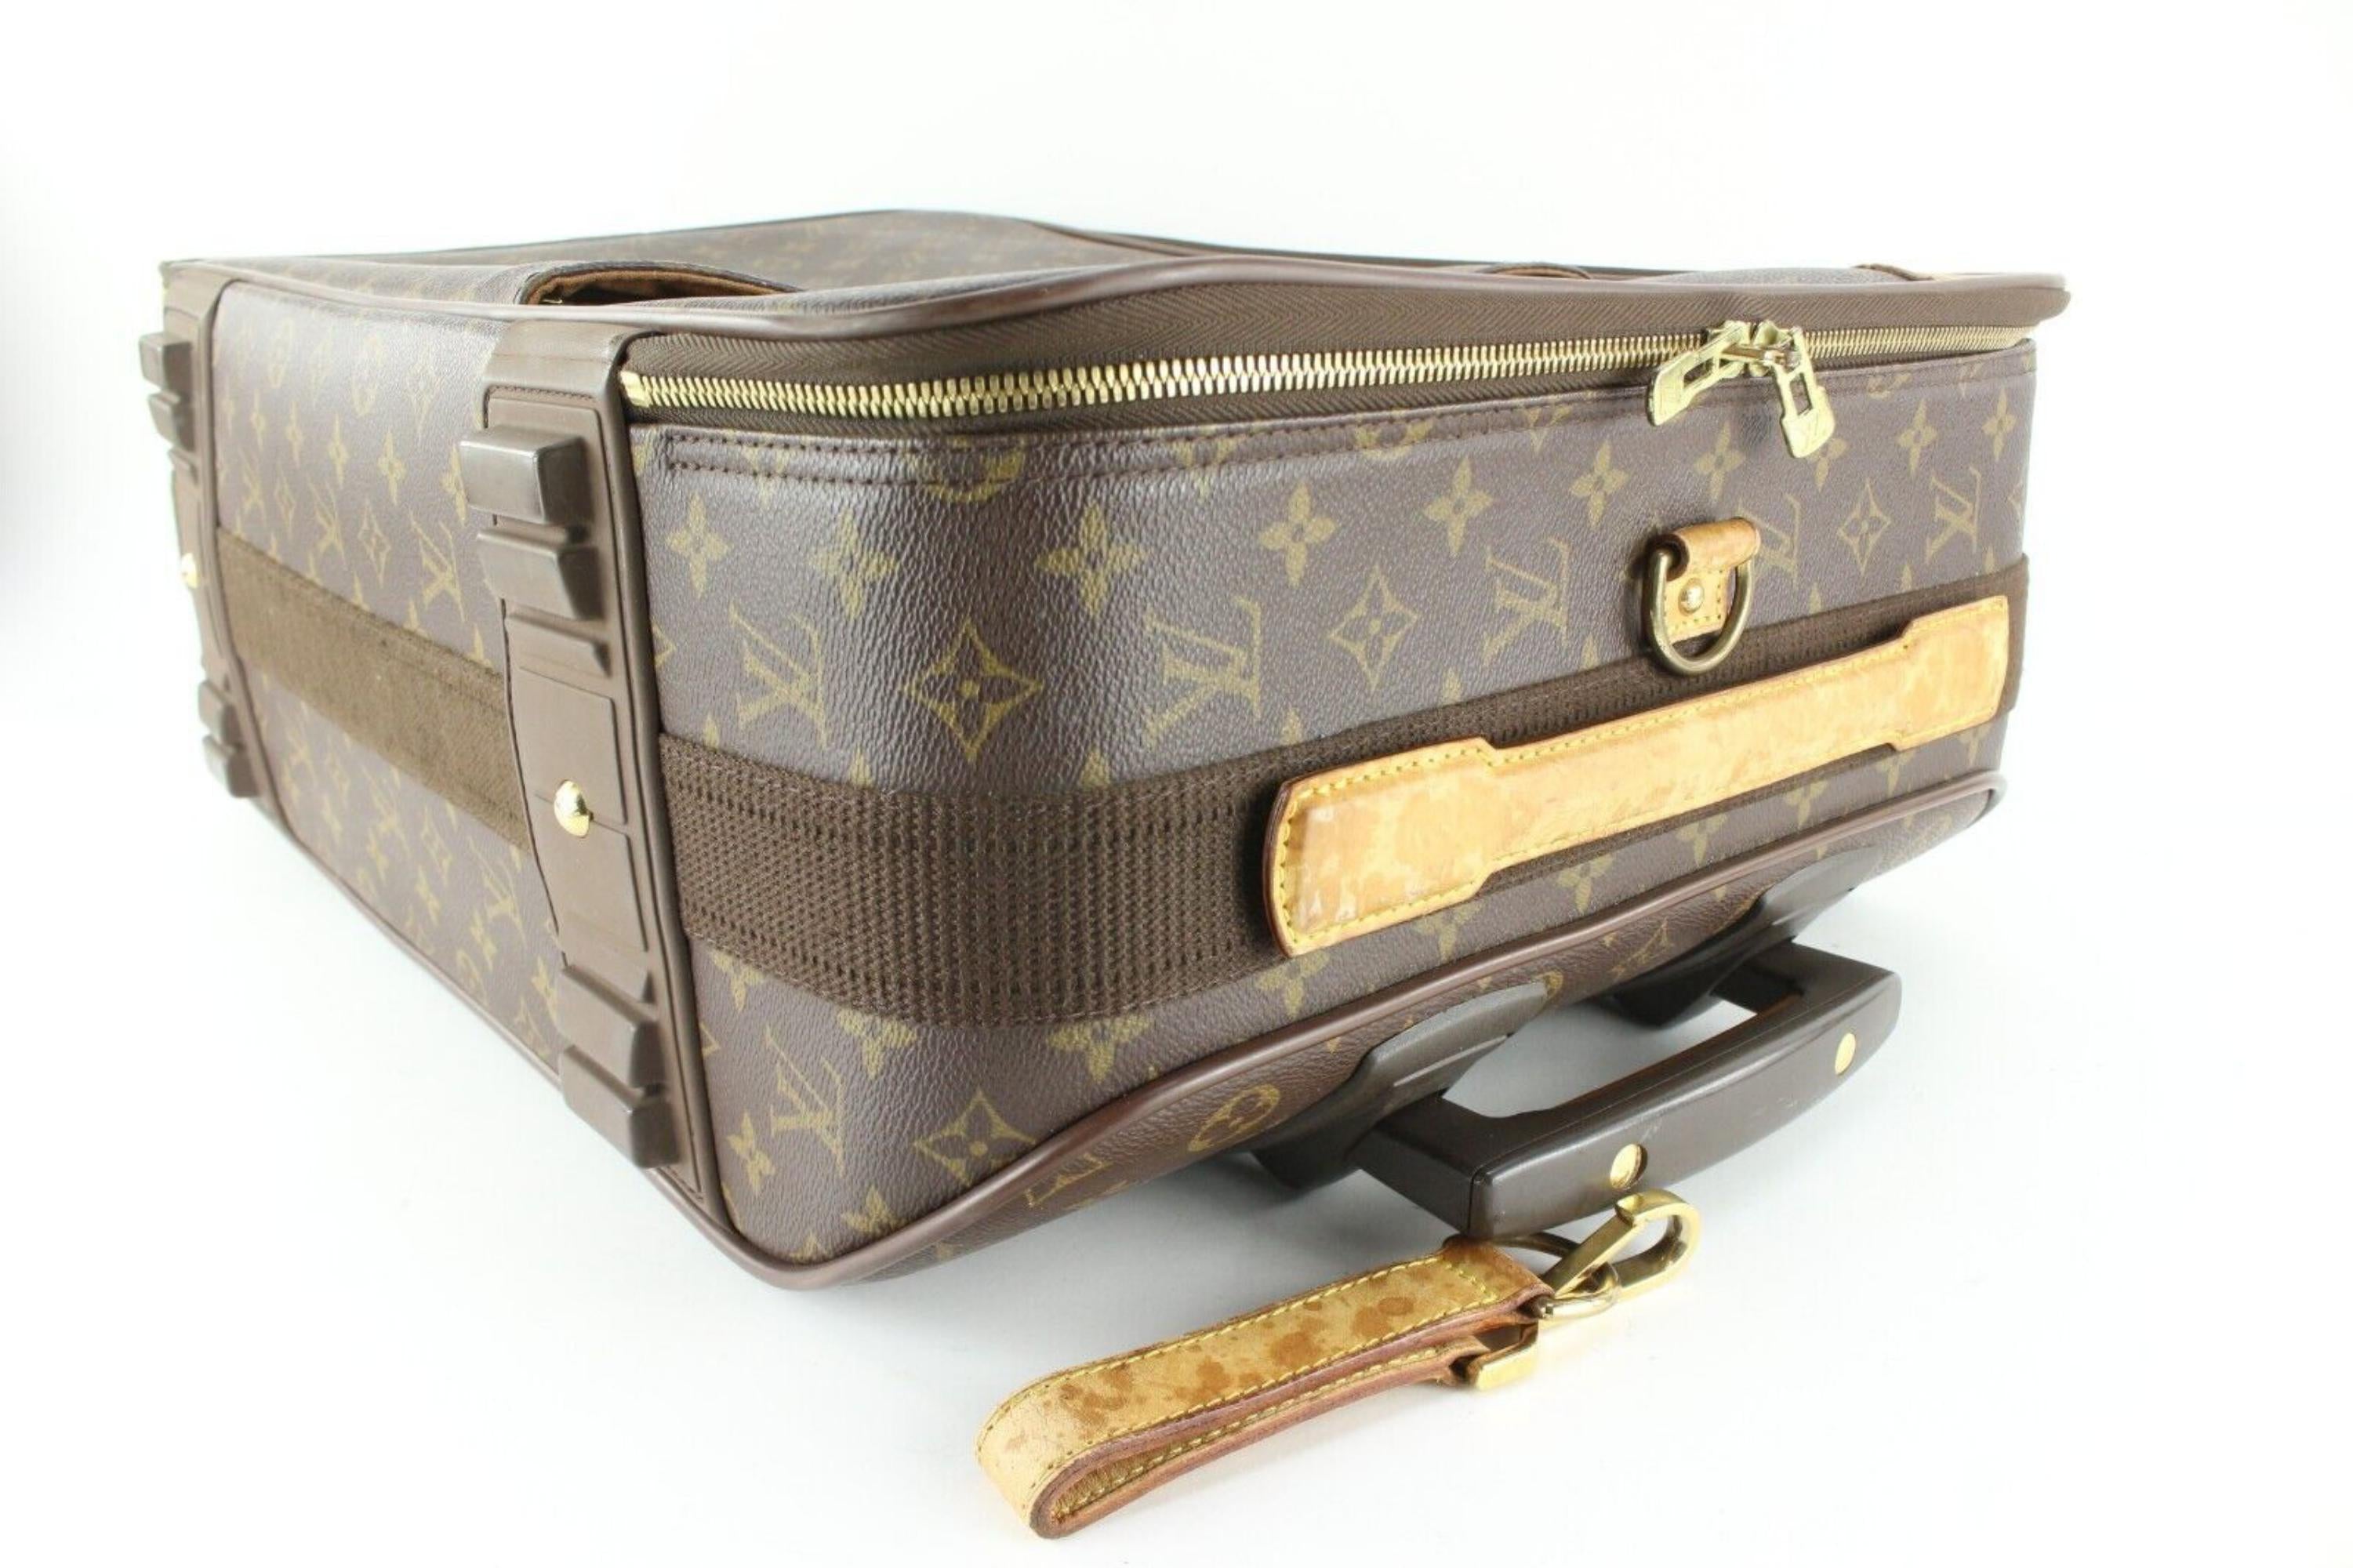 Authentic LOUIS VUITTON Pegase 55 Monogram Canvas Travel Rolling Suitcase  #51353